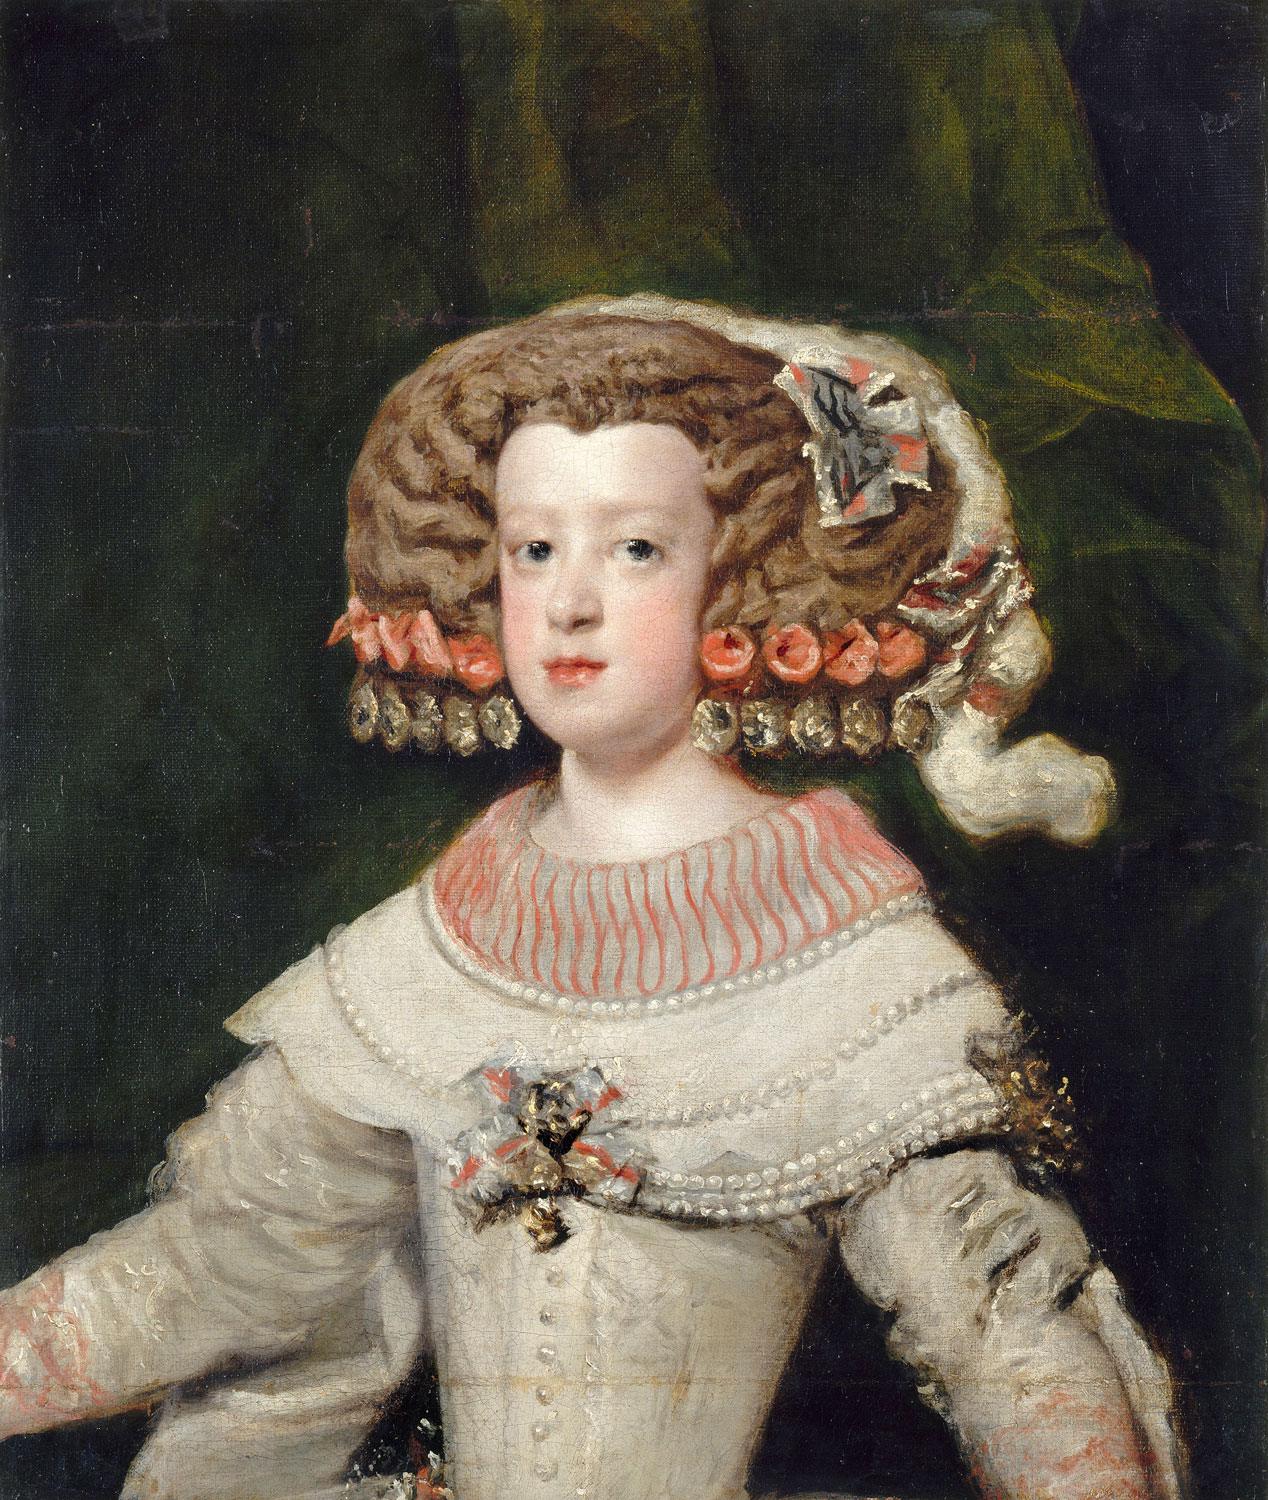 L'Infante Marie-Thérèse, future reine de France